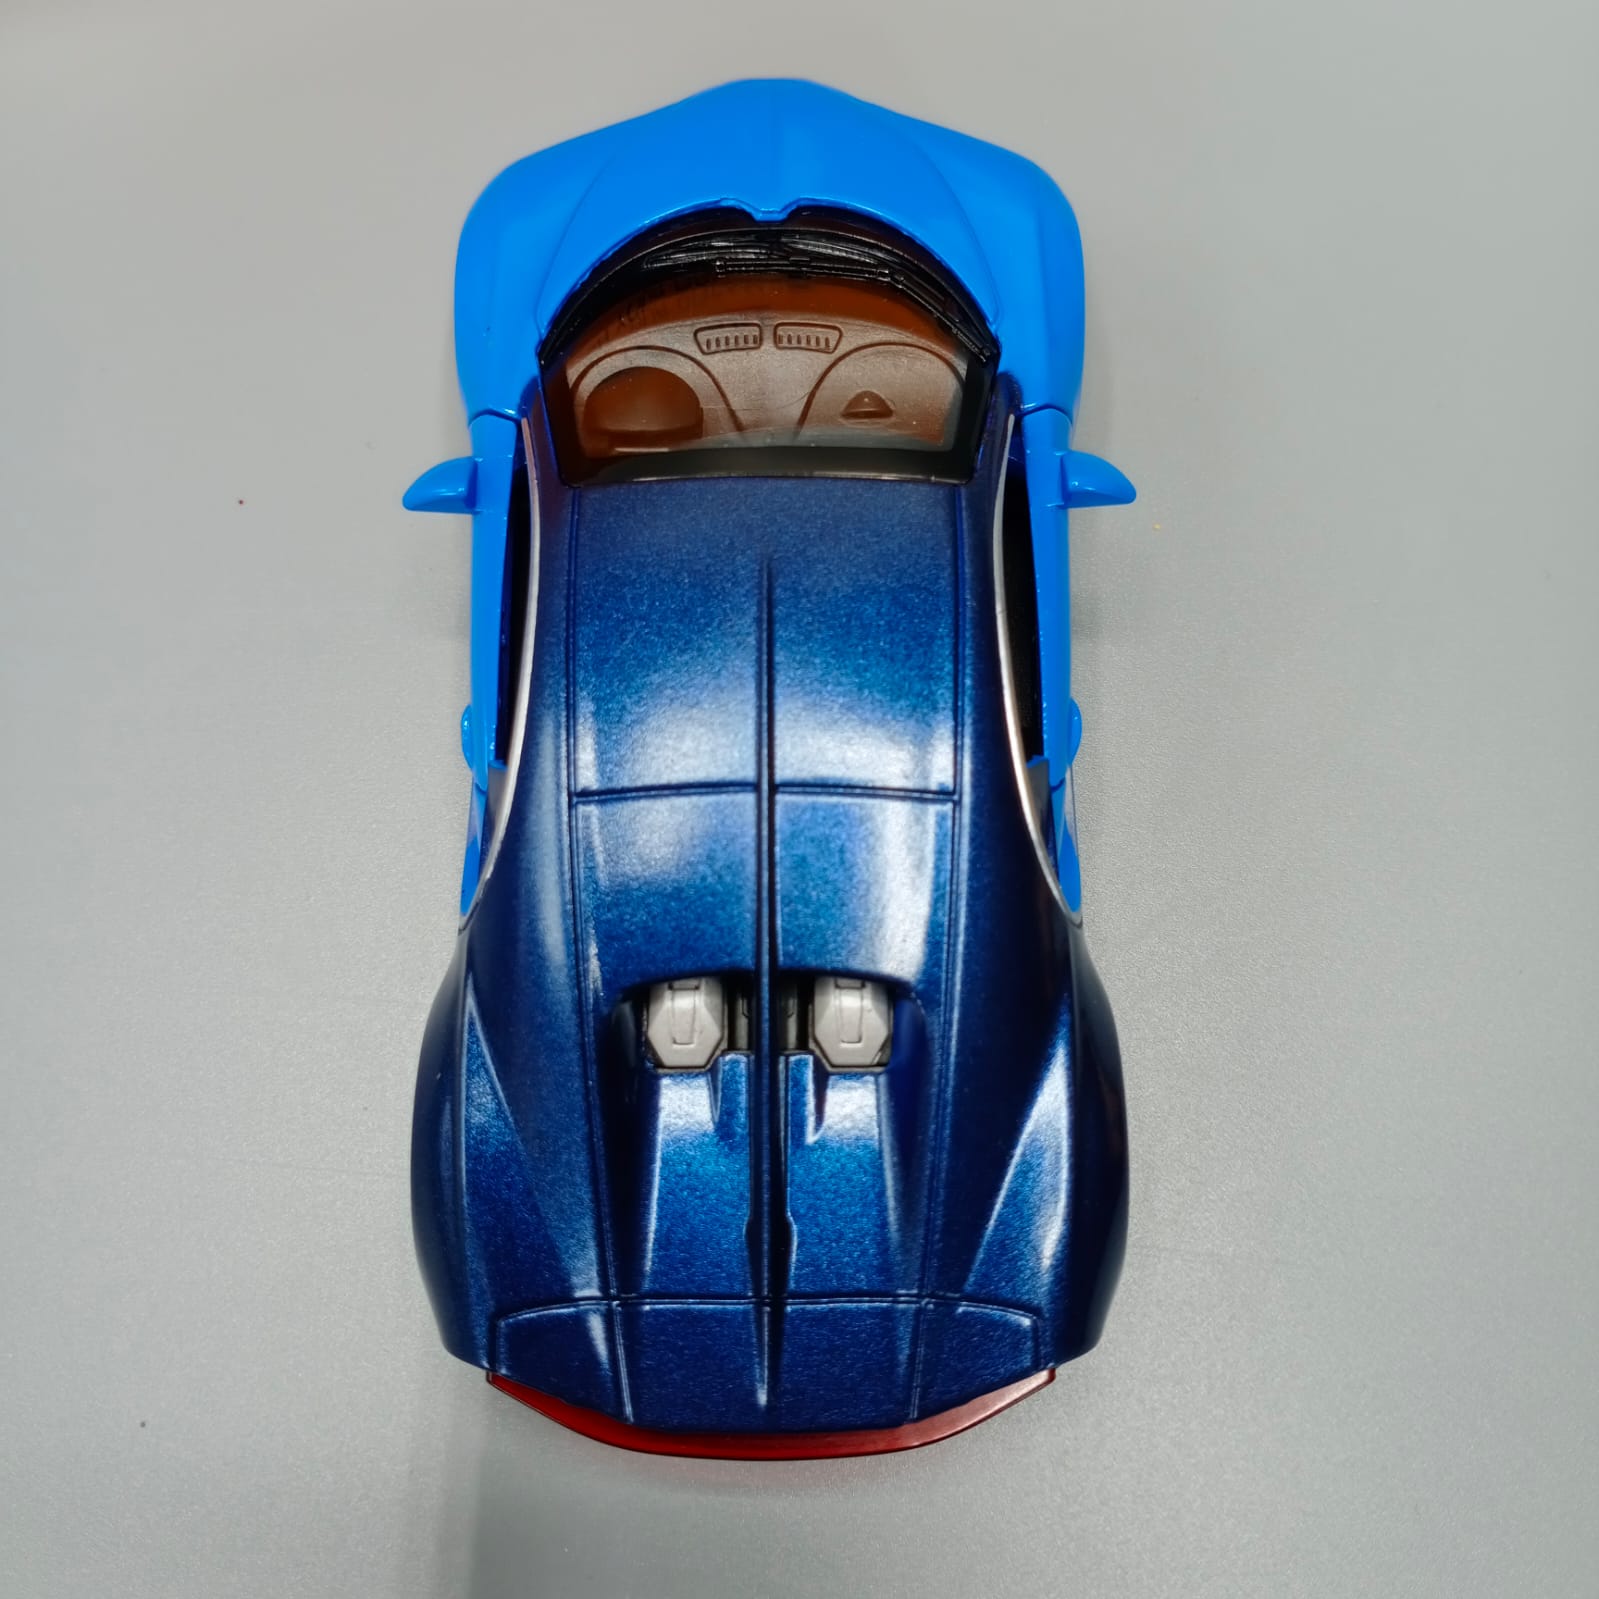 Die-Cast Bugatti Chiron Car Toy For Kids